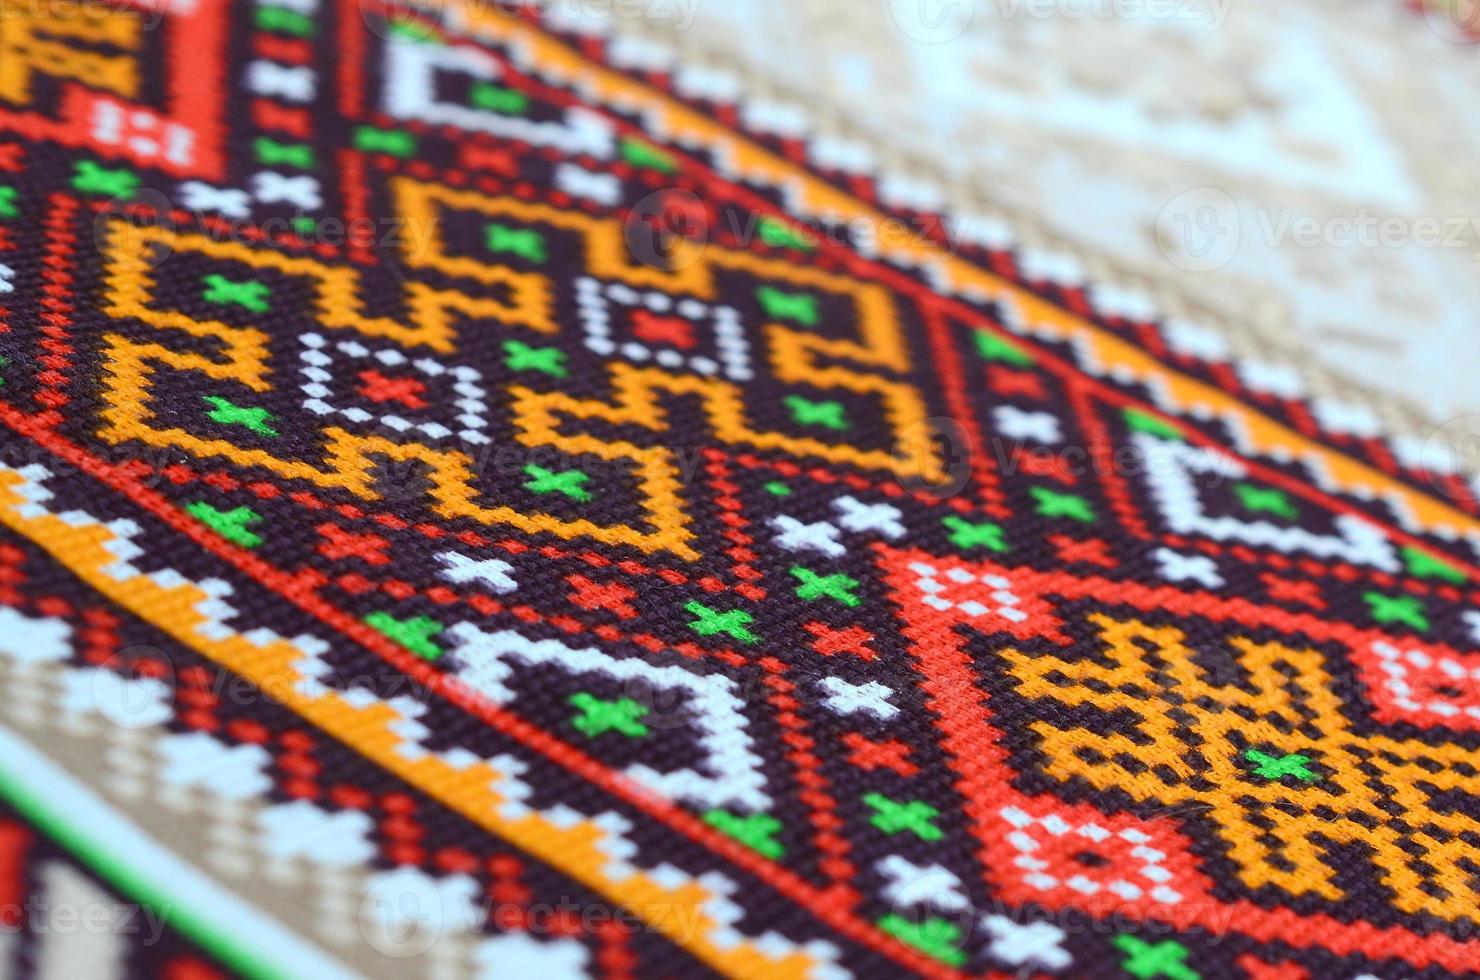 traditionell ukrainska folk konst stickat broderi mönster på textil- tyg foto